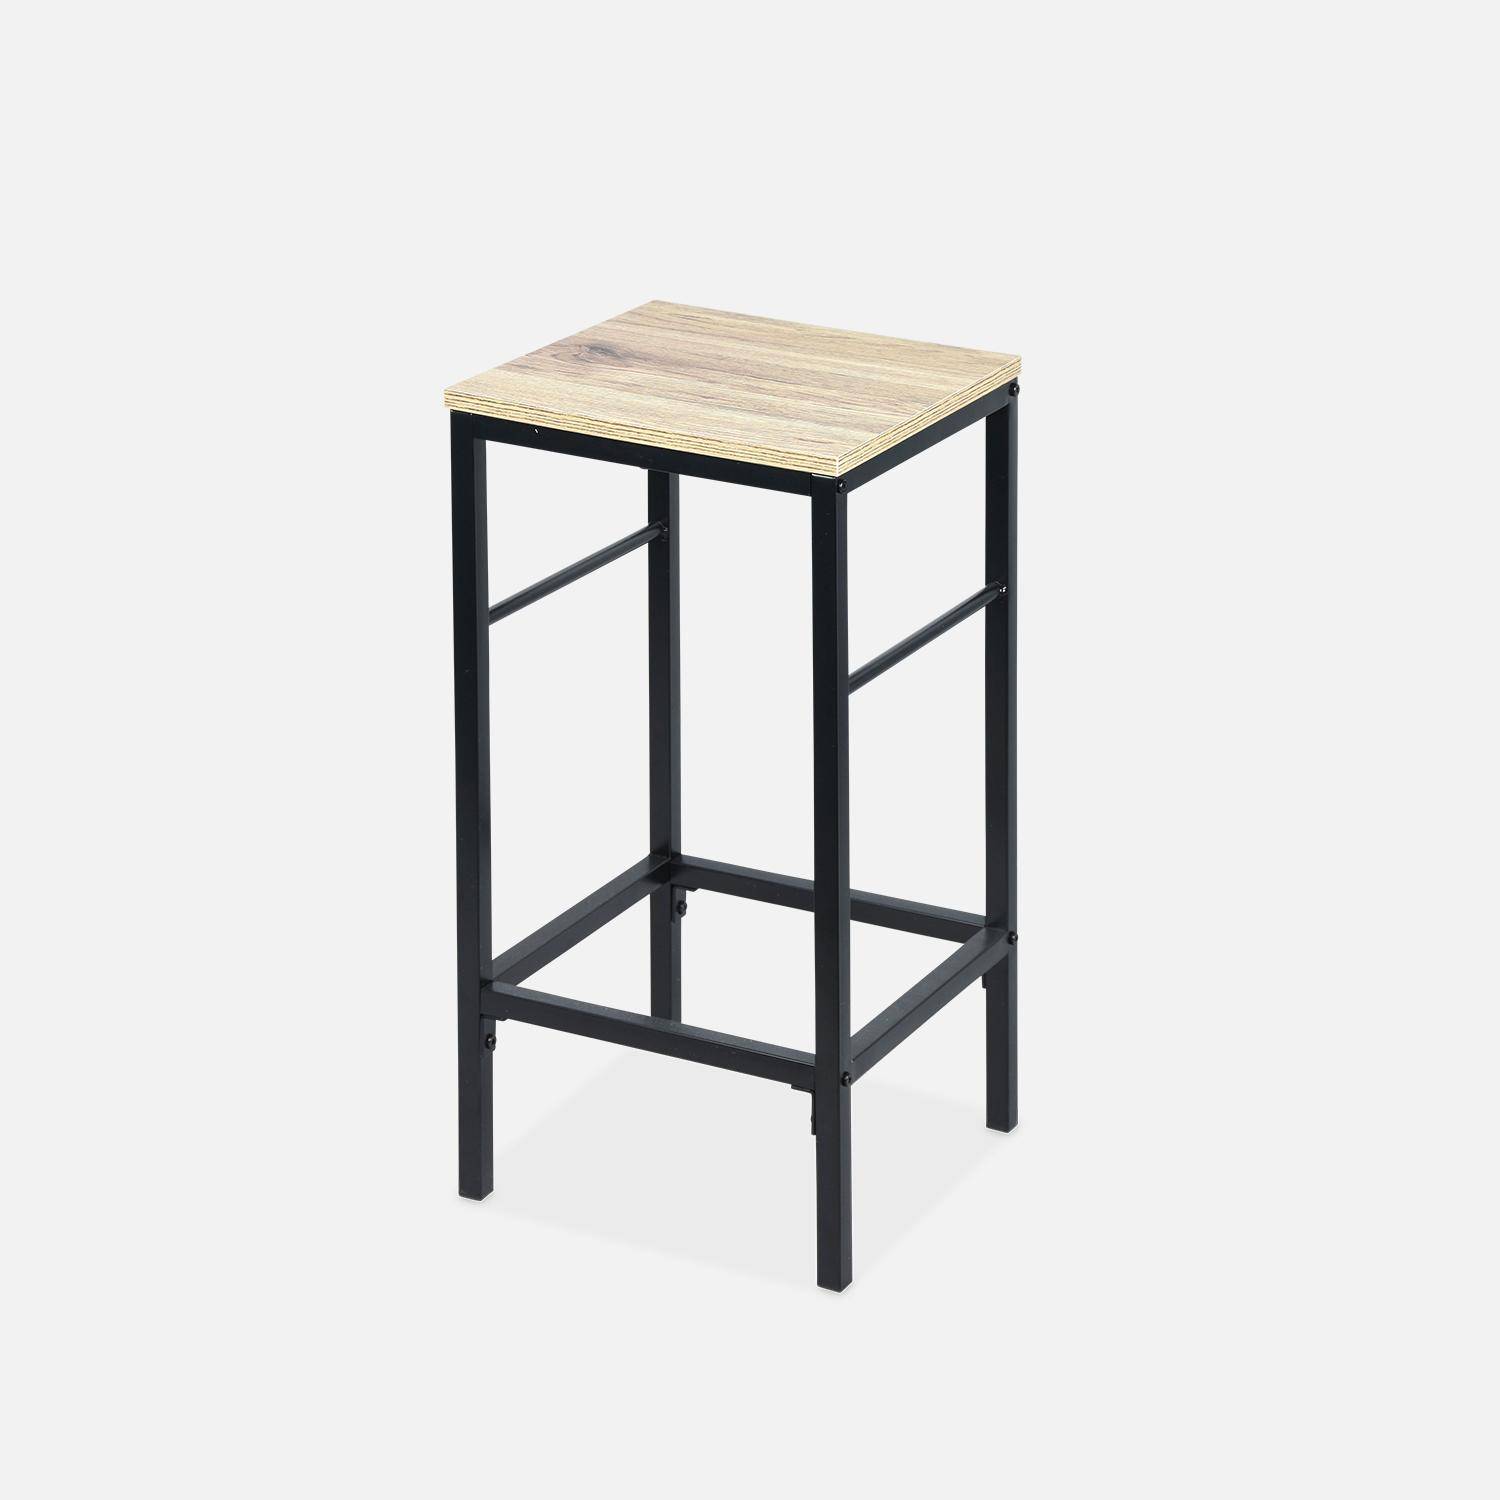 Tavolo alto con due sgabelli e due ripiani, decoro in legno e metallo, soppalco, L 100 x P 60 x H 95 cm Photo8